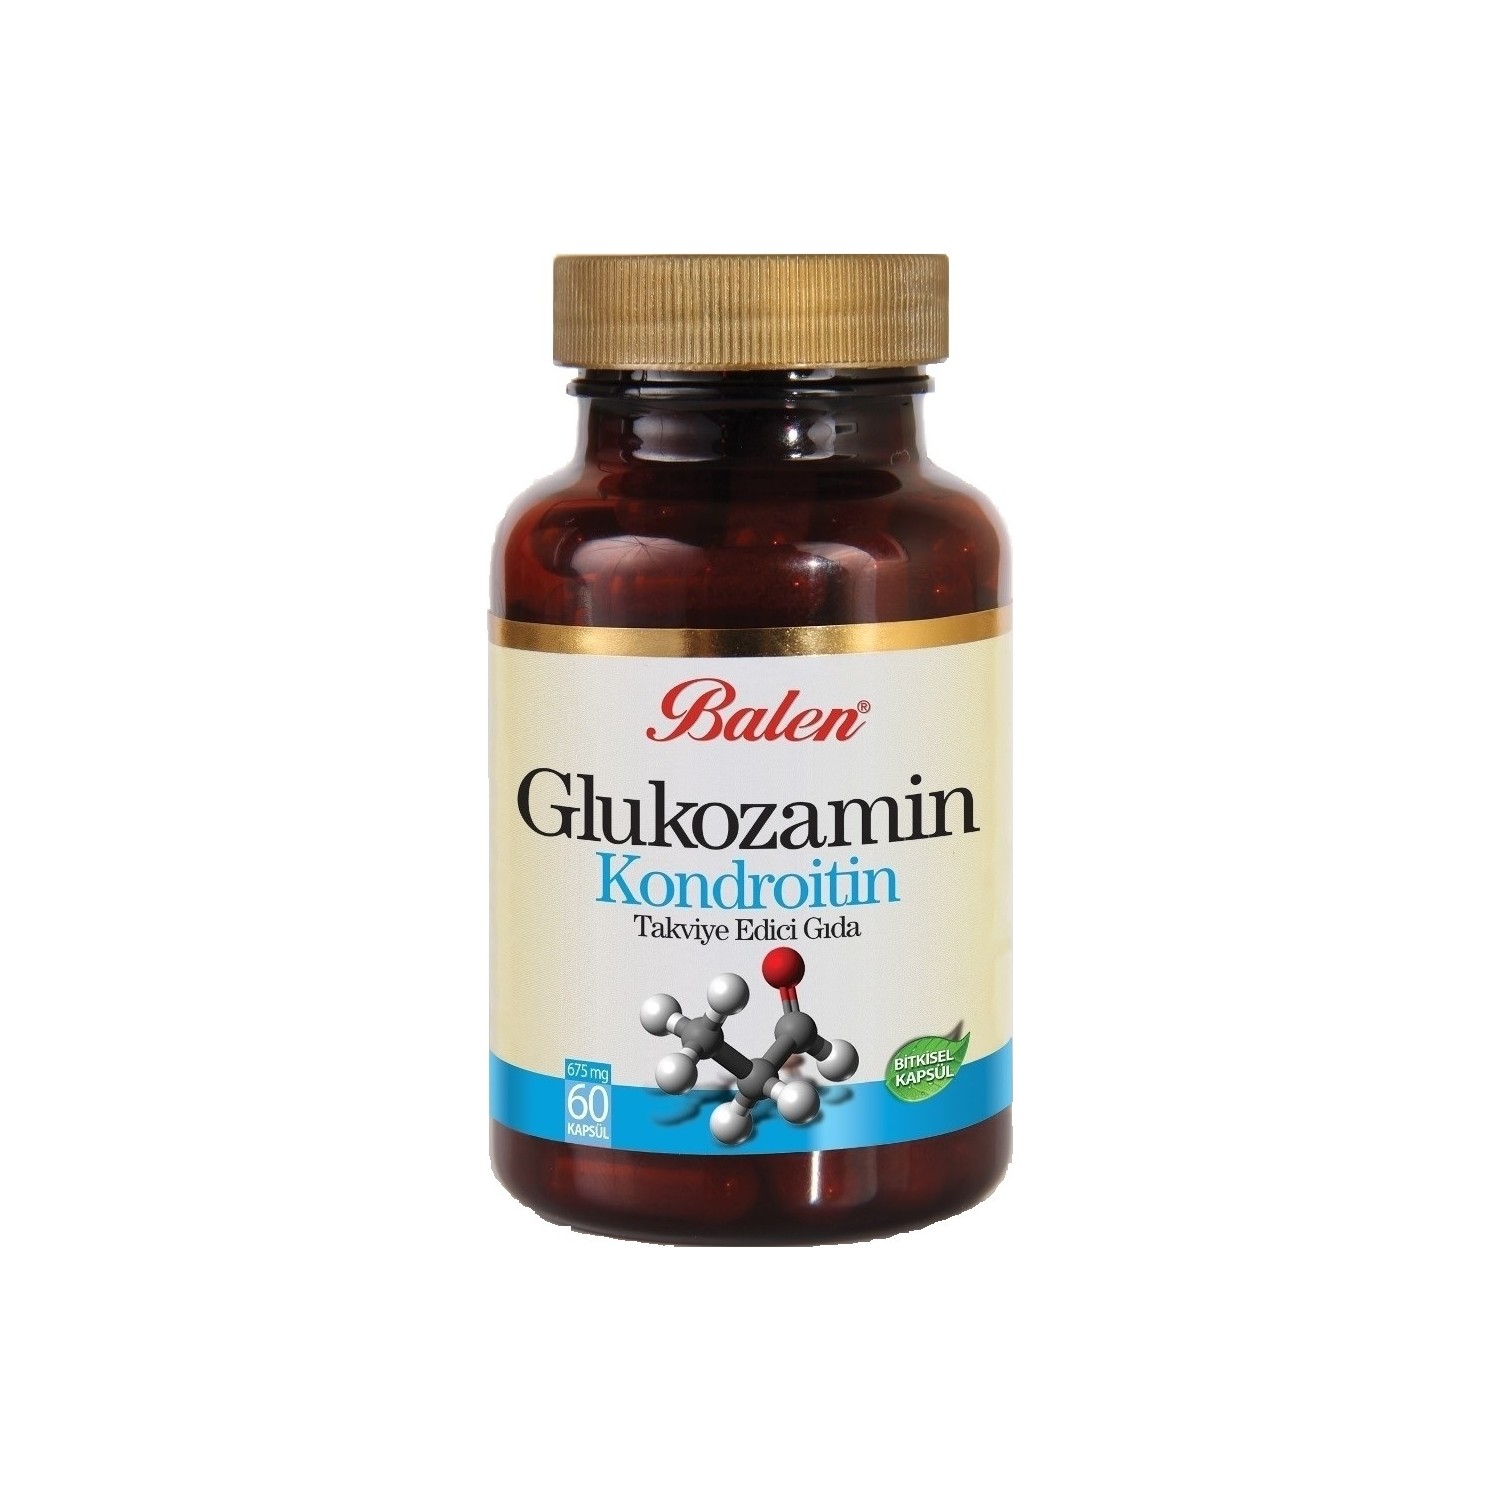 Активная добавка глюкозамин Balen Chondroitin, 60 капсул, 750 мг natural factors глюкозамин 500 мг хондроитин 400 мг 60 капсул